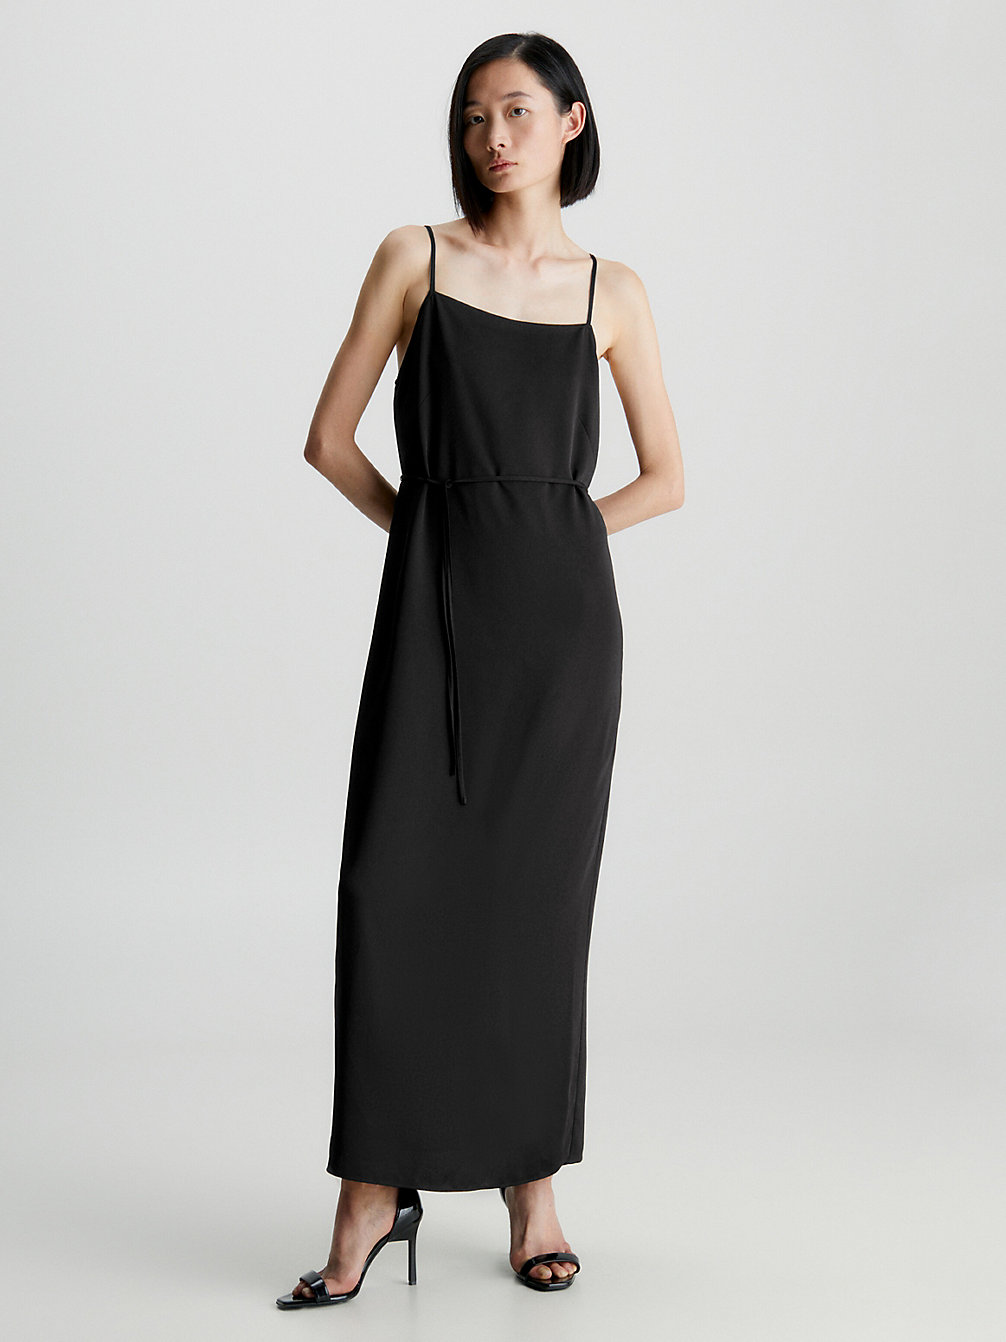 CK BLACK > Wsuwana Sukienka Midi Z Krepy > undefined Kobiety - Calvin Klein